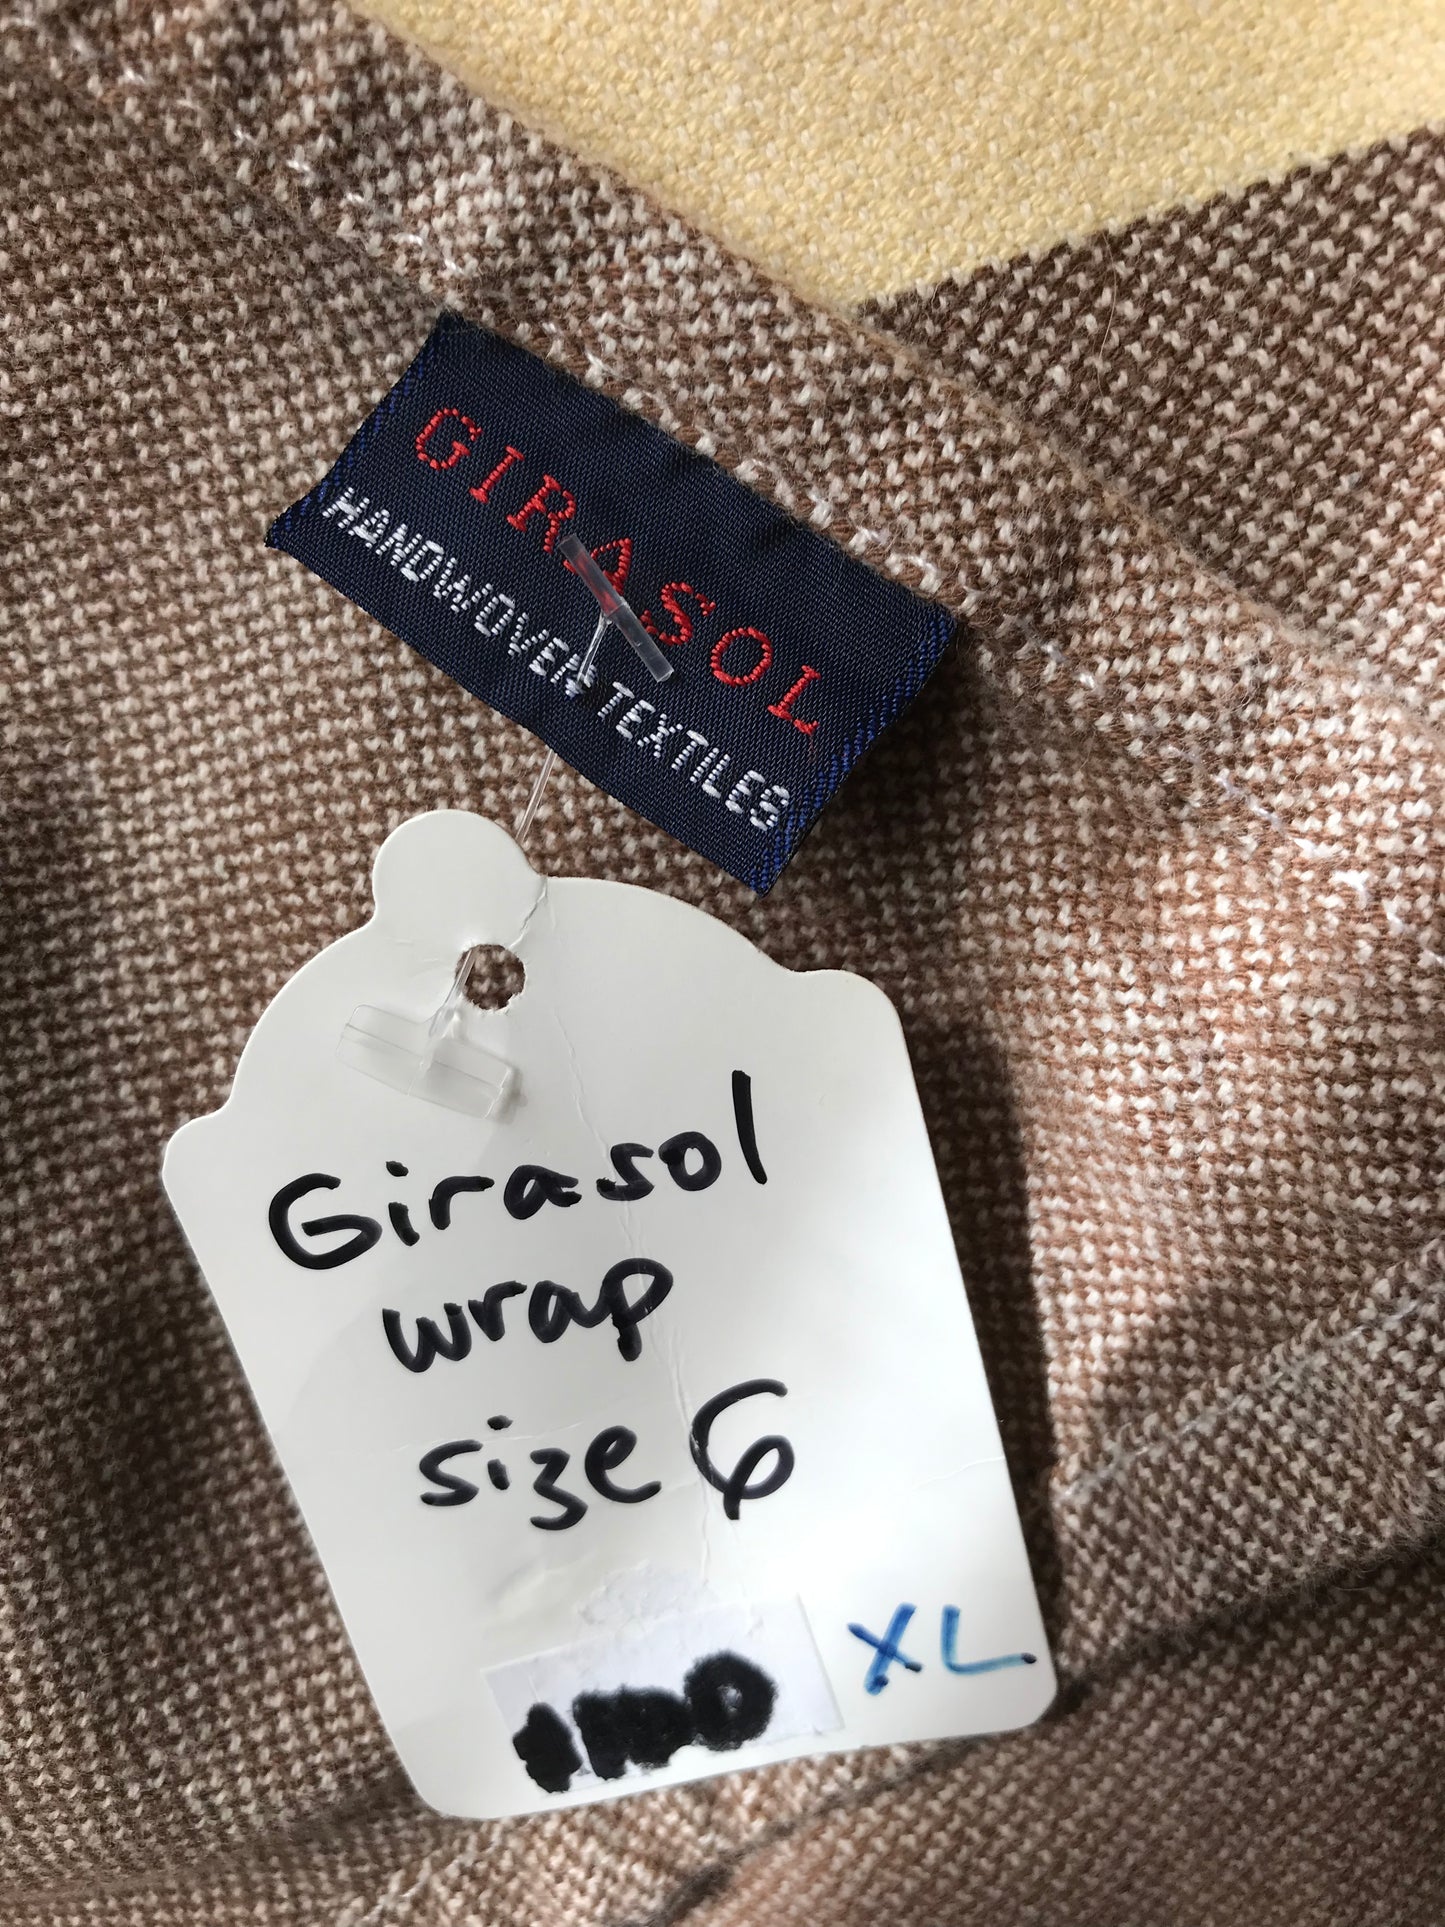 Girasol wrap (XL)